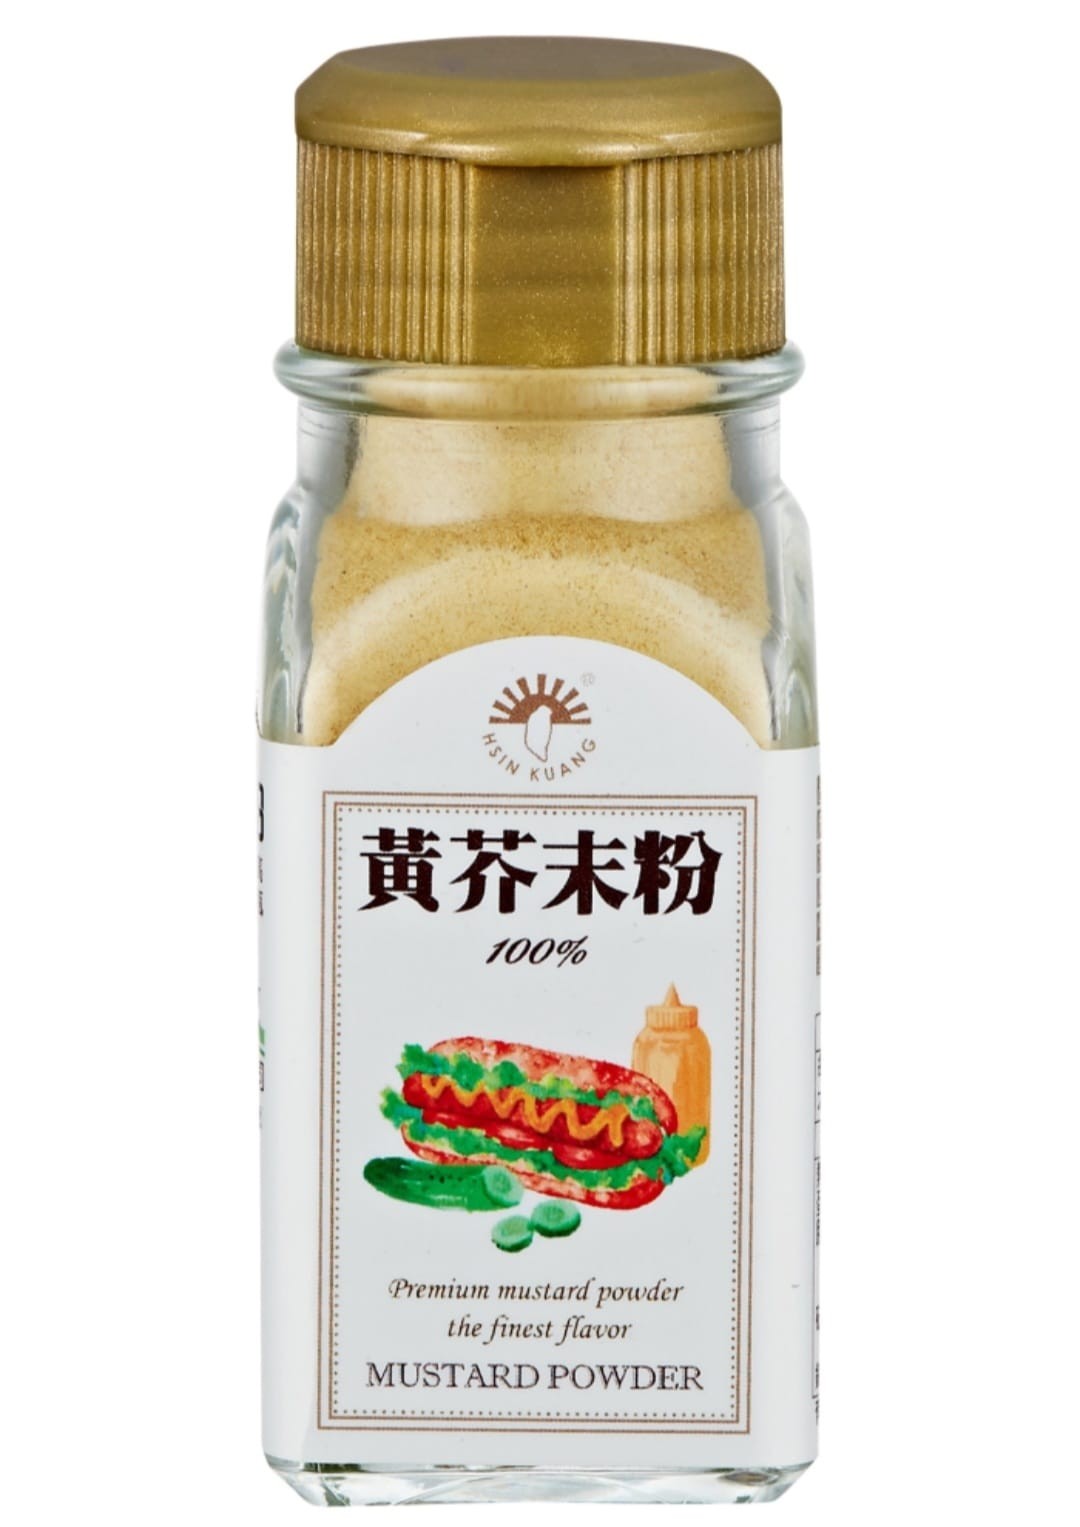 (新光)芥末椒鹽粉55g(全素) – 永發生鮮素食專賣店